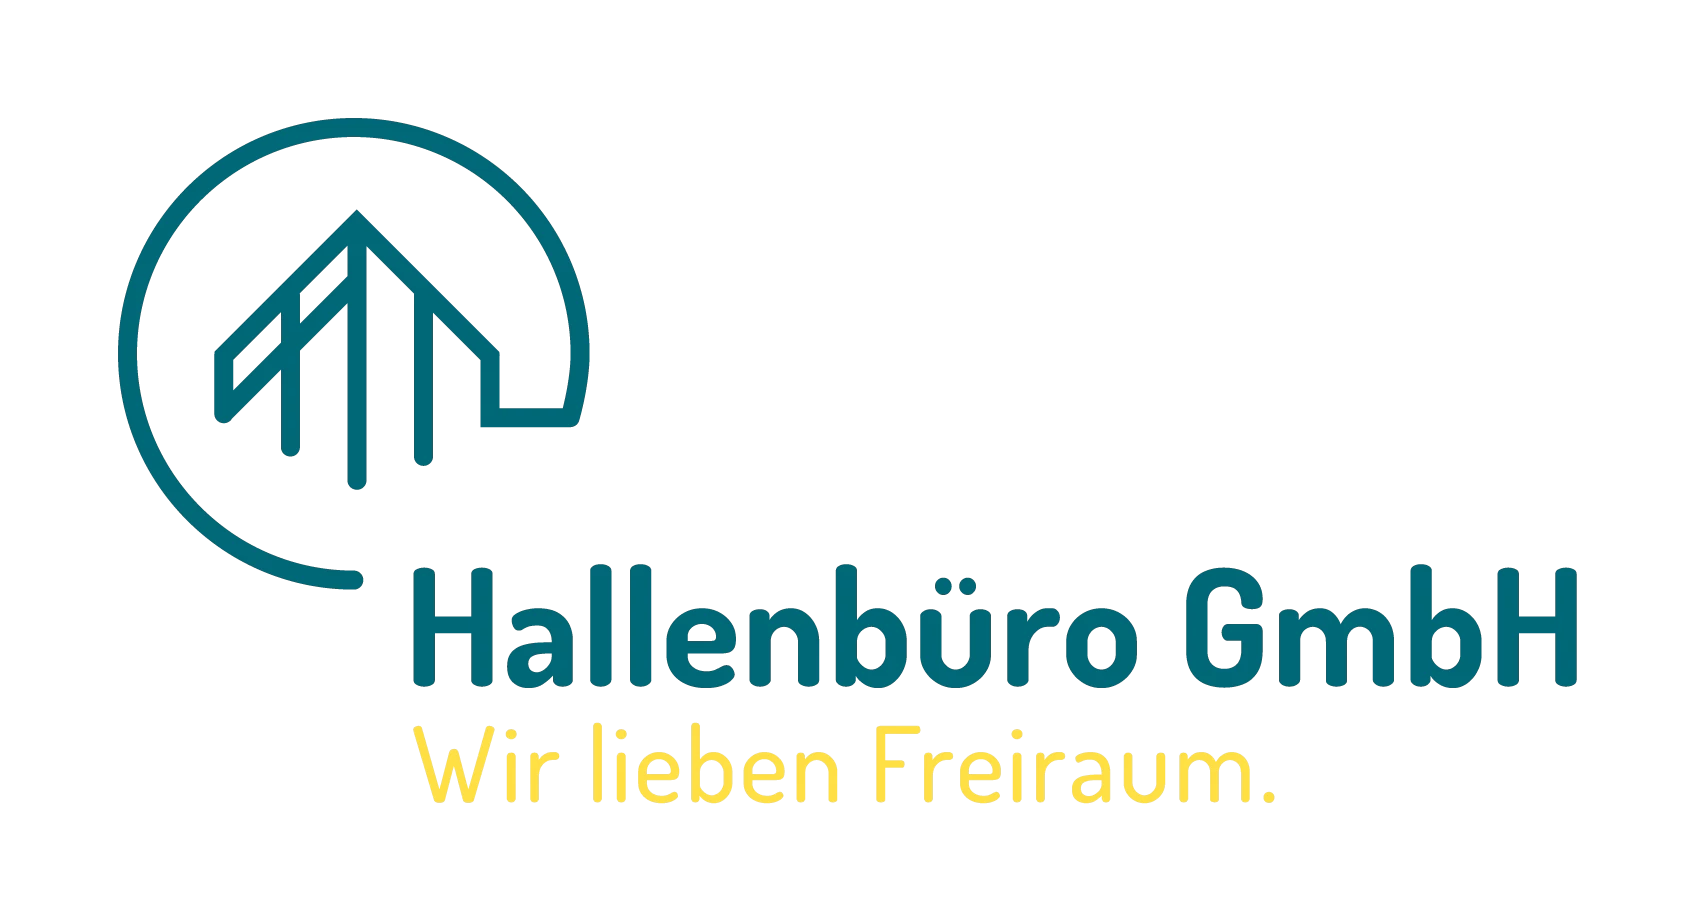 Hallenbüro GmbH | jetzt Angebot für Hallenbüro oder Trennwand anfordern !!